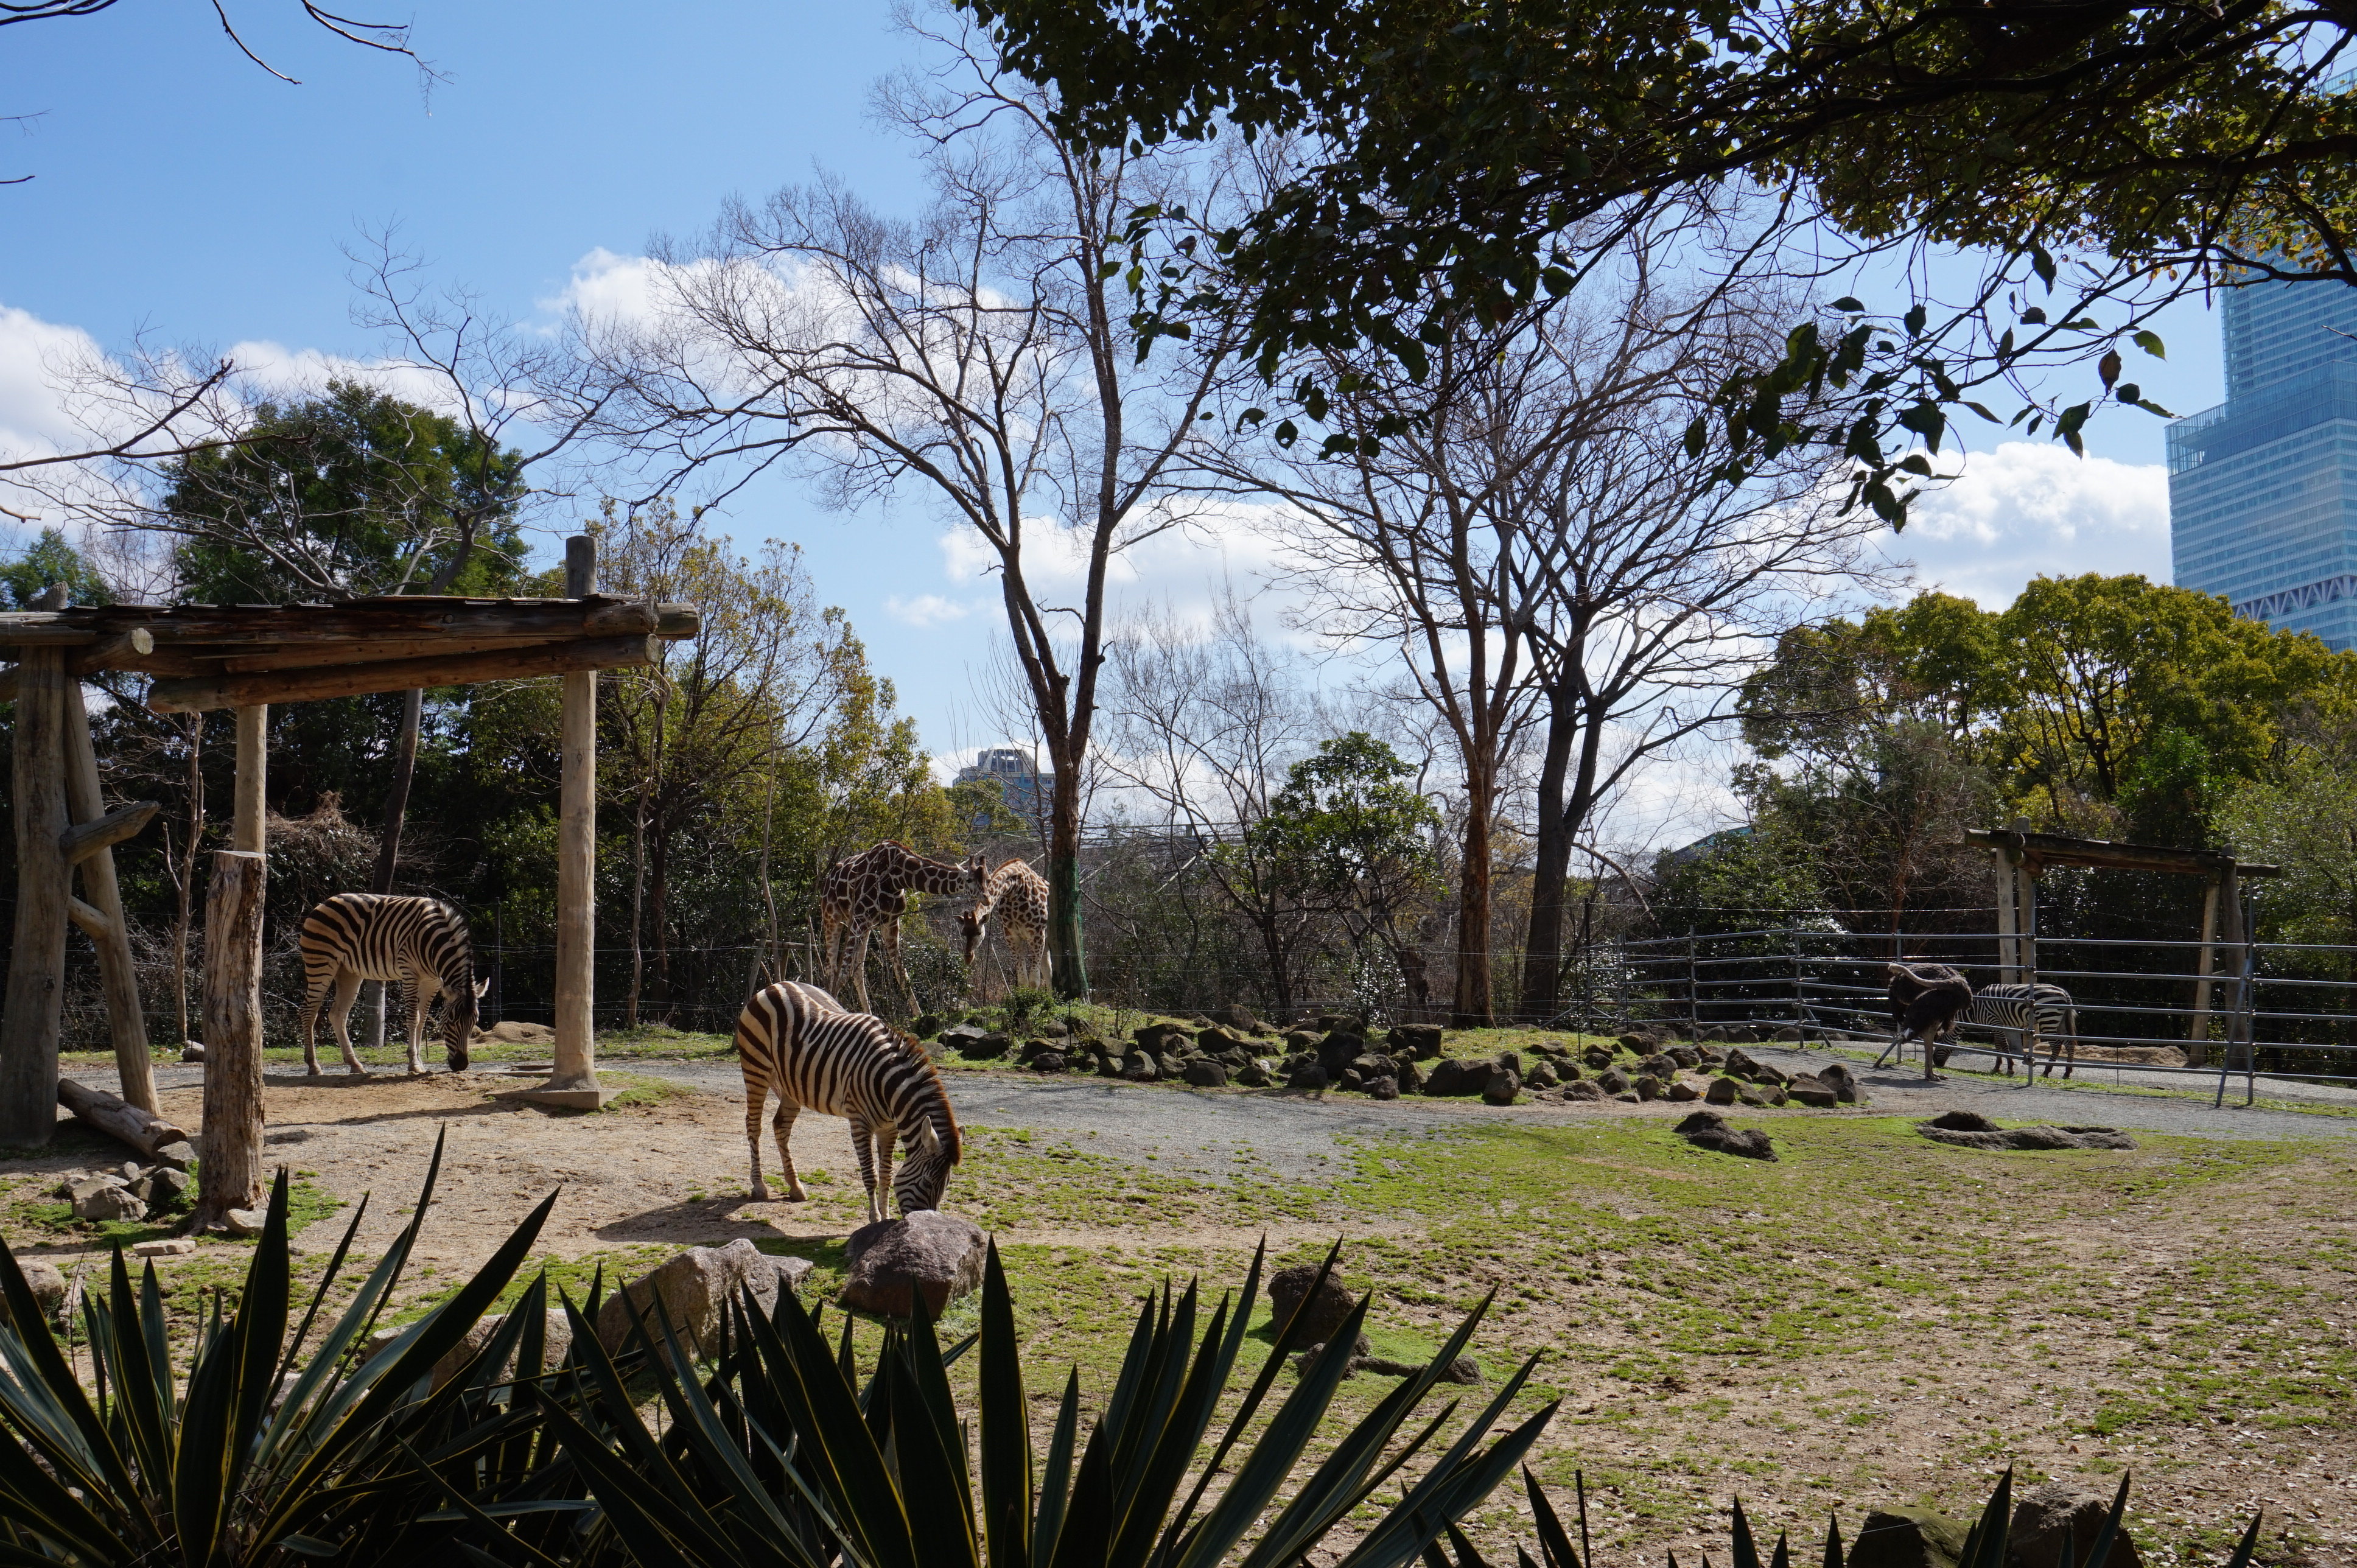 【携程攻略】大阪天王寺动物园景点,从通天阁出来步行可到动物园